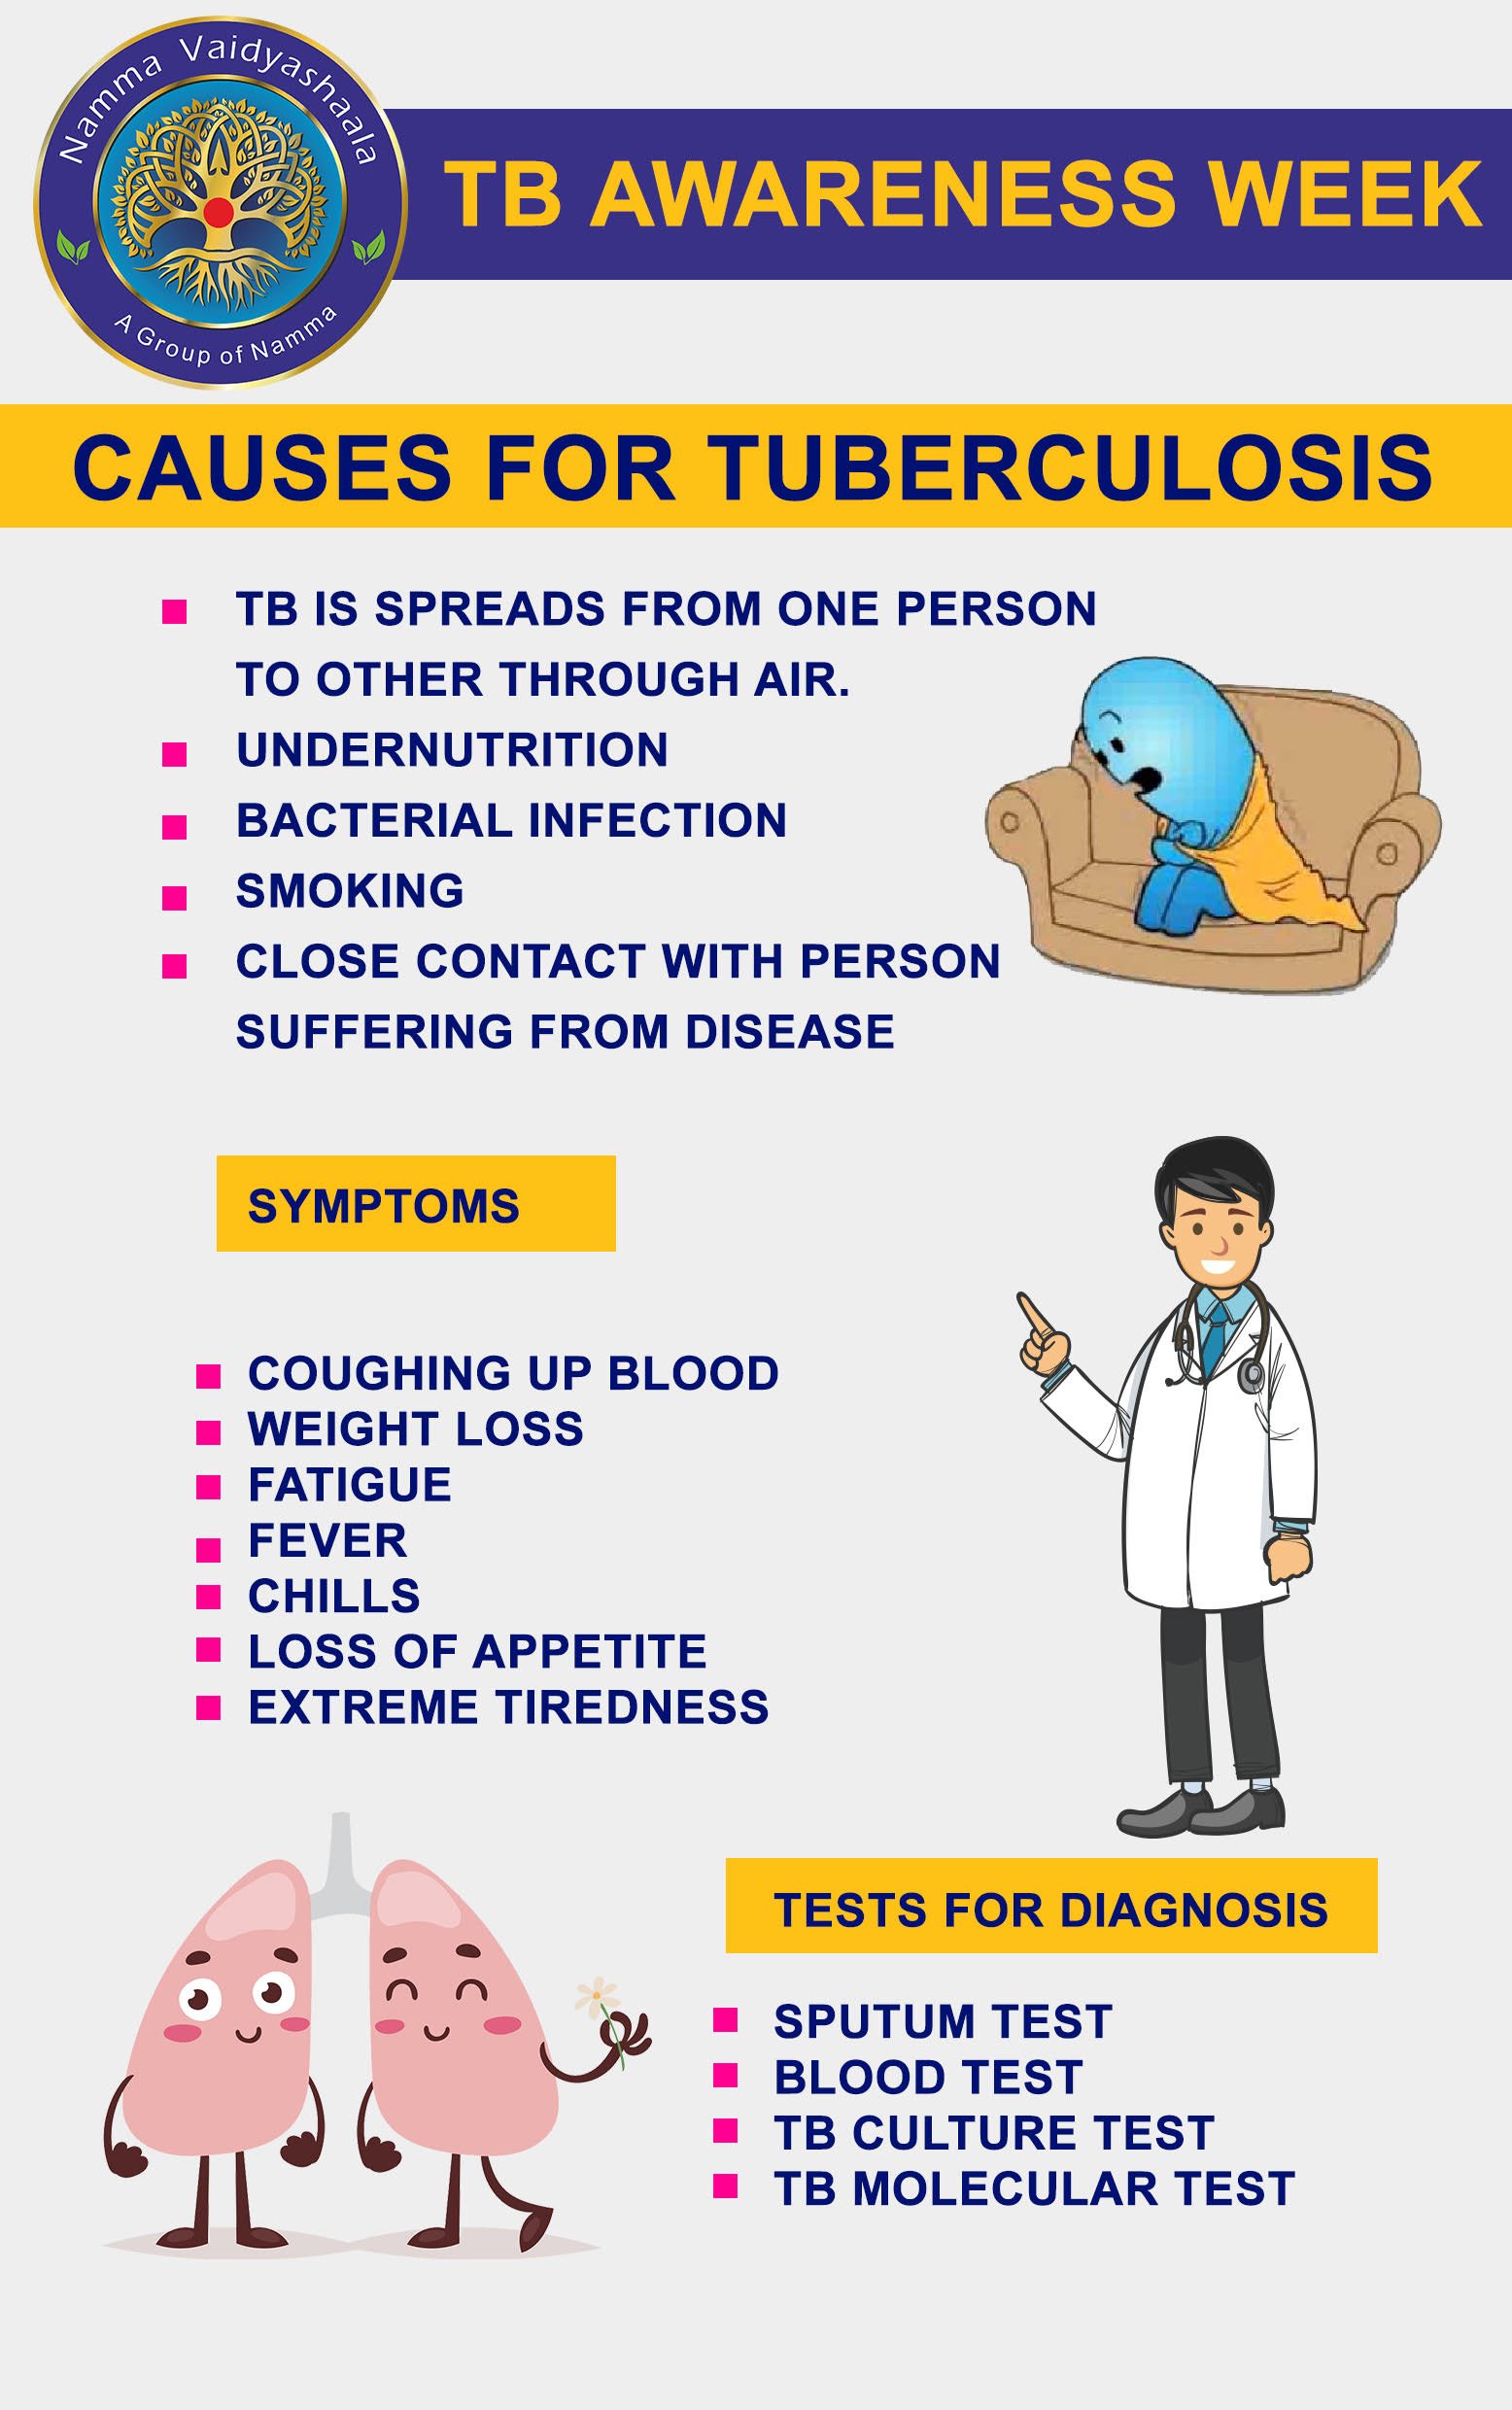 Tuberculosis symptoms